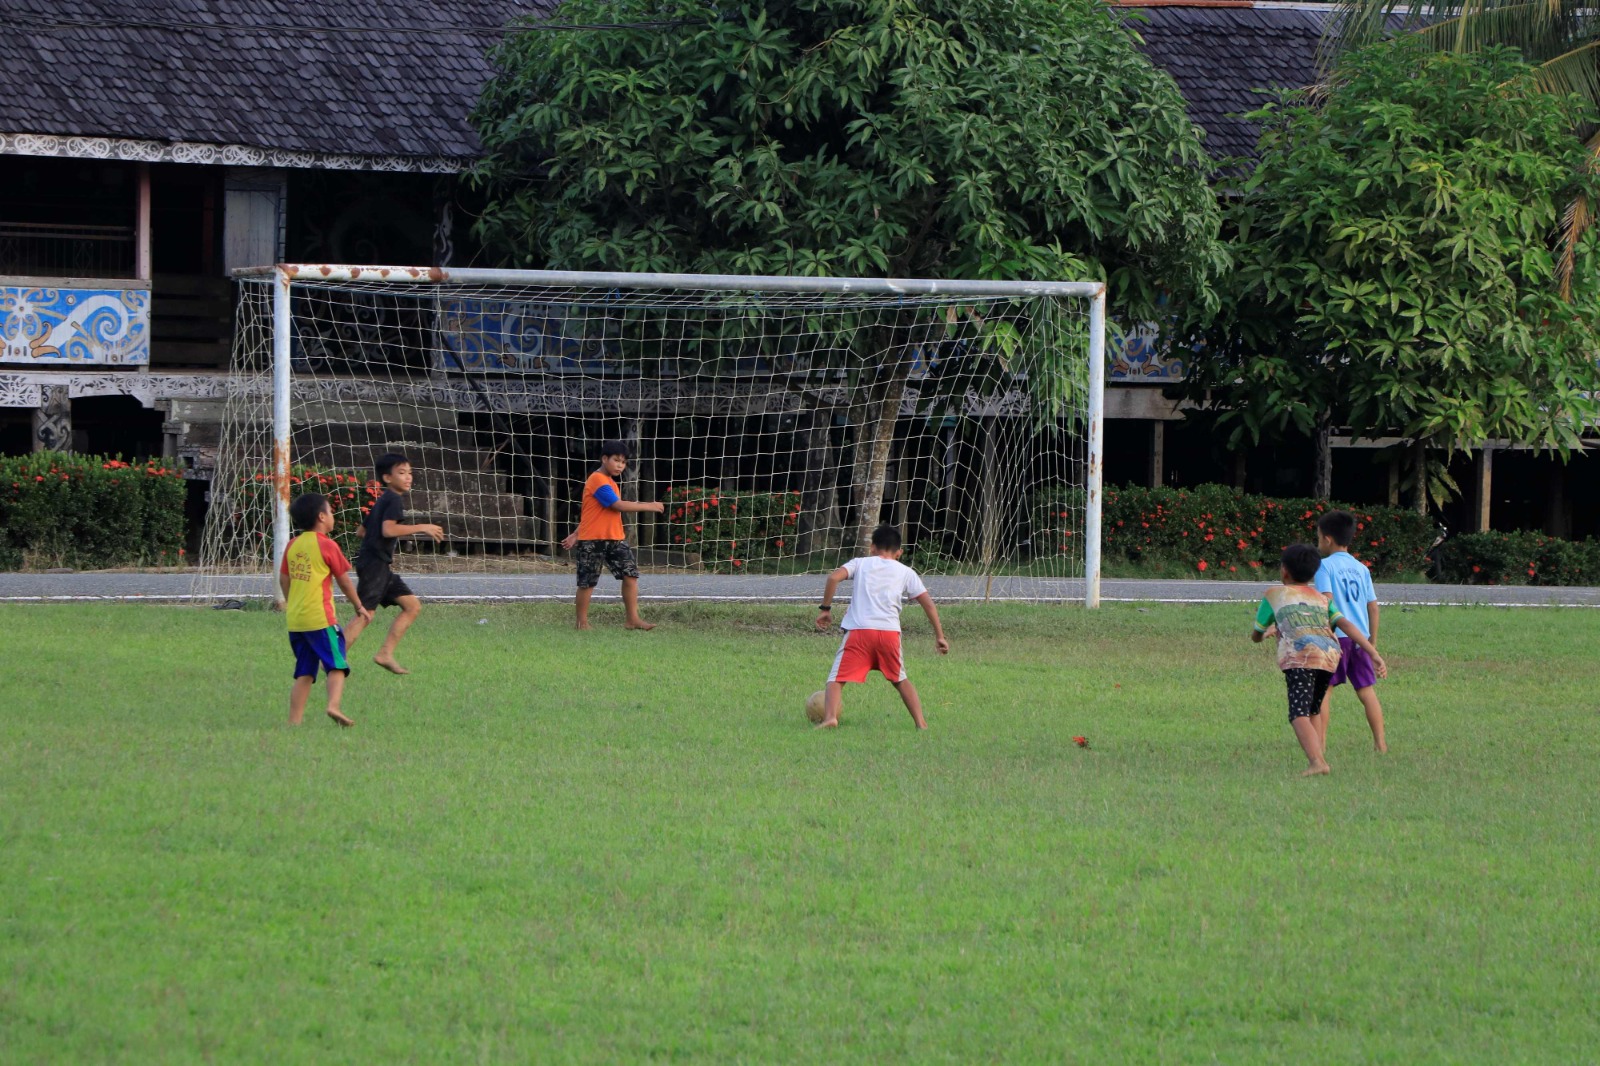 AKTIVITAS : Anak-anak di Desa Setulang bermain bola sebagai bentuk aktivitas sosialisasi antar warga.